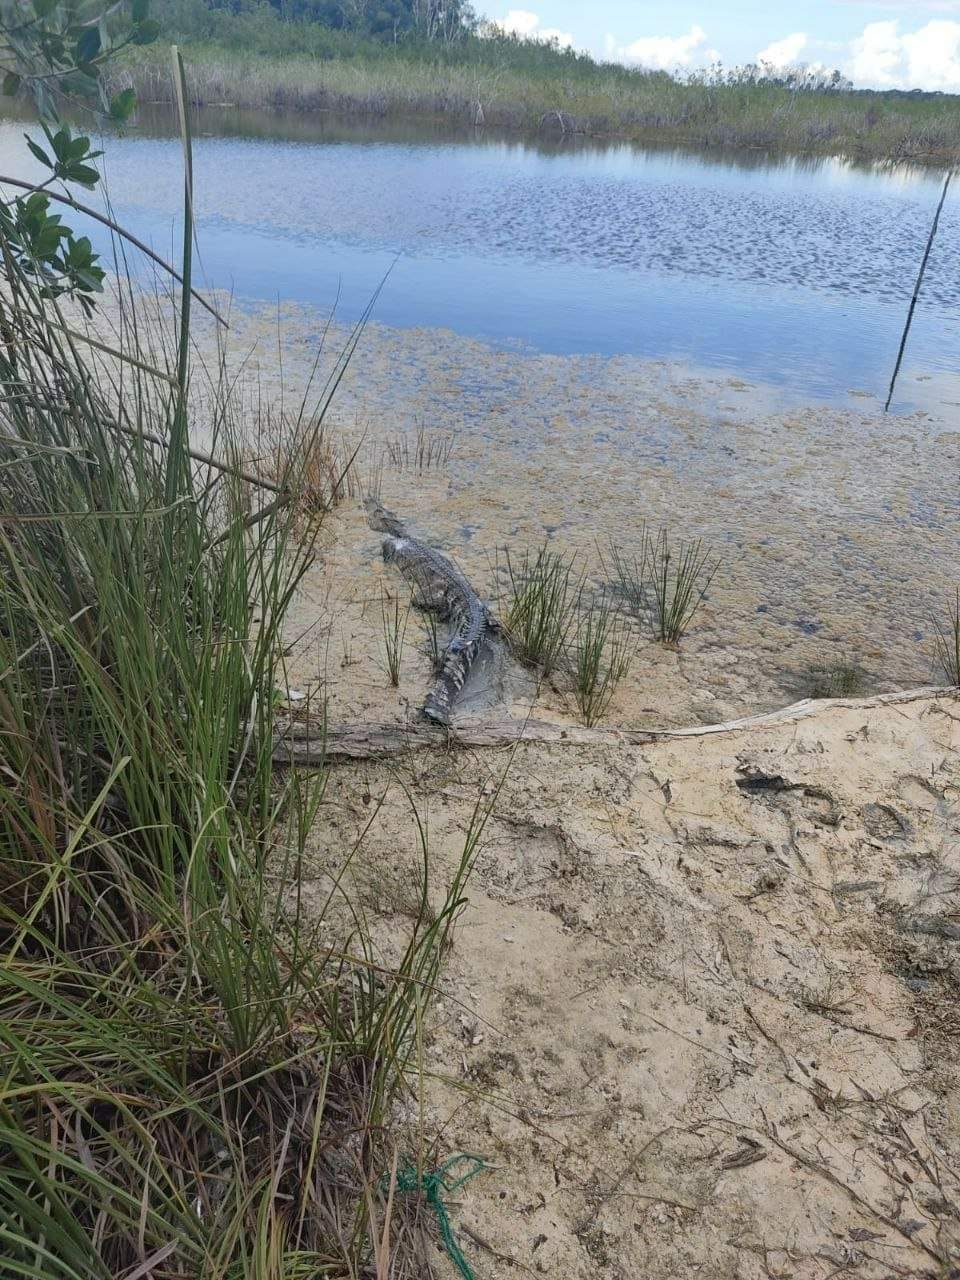 Protección al Ambiente en Quintana Roo libera a cocodrilo rescatado en la Laguna Bacalar